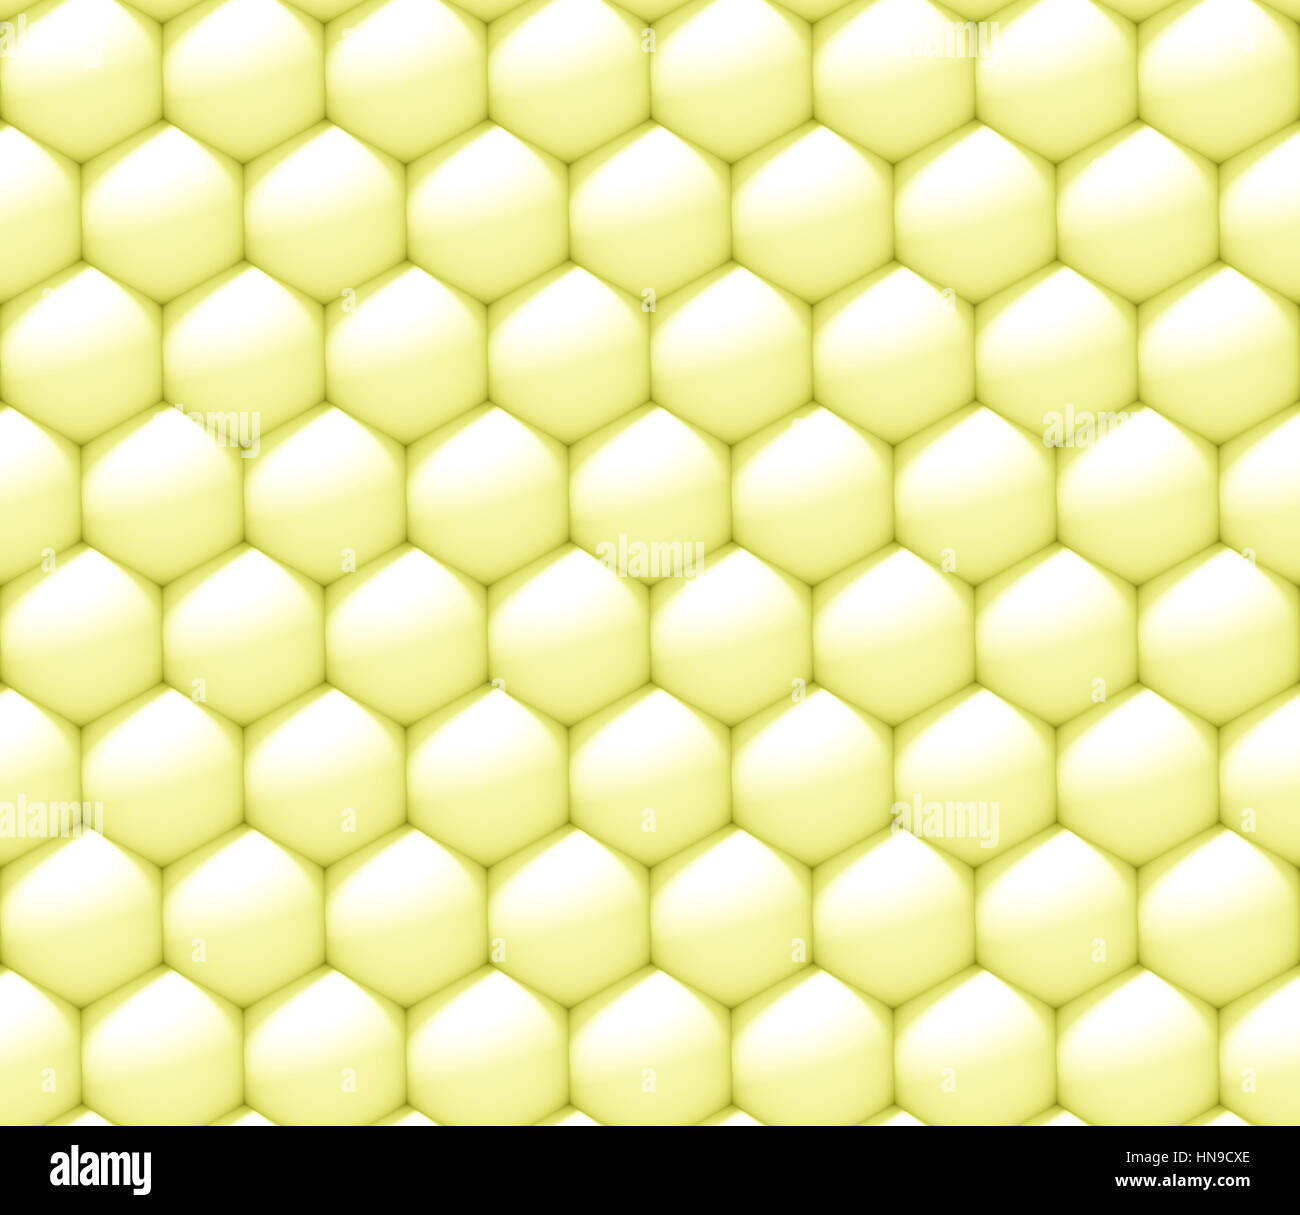 abstrakter 3d Hintergrund gemacht geschachtelten Sphären in weiß und gelb in einem Sechseck-Muster (nahtlose 3d Illustration) Stockfoto